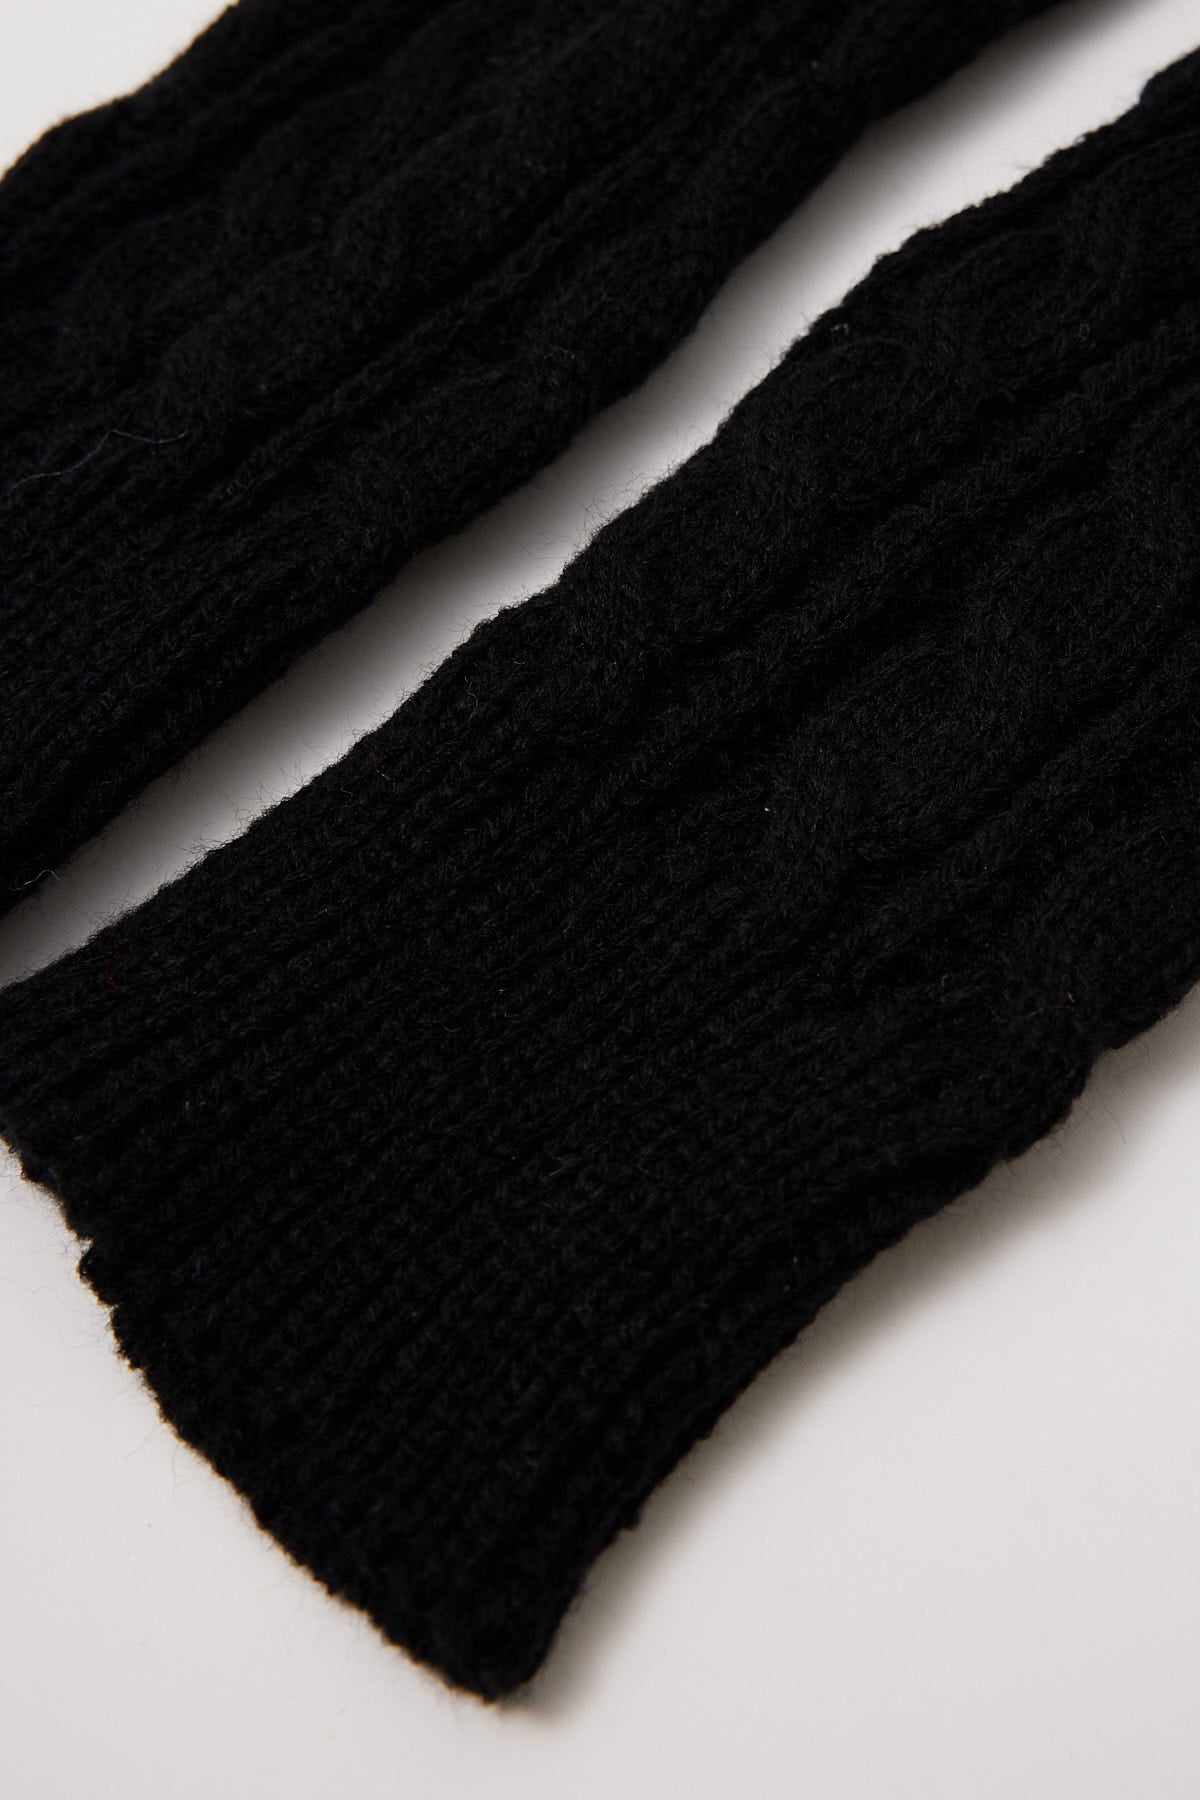 Token Knit Arm Warmers Black